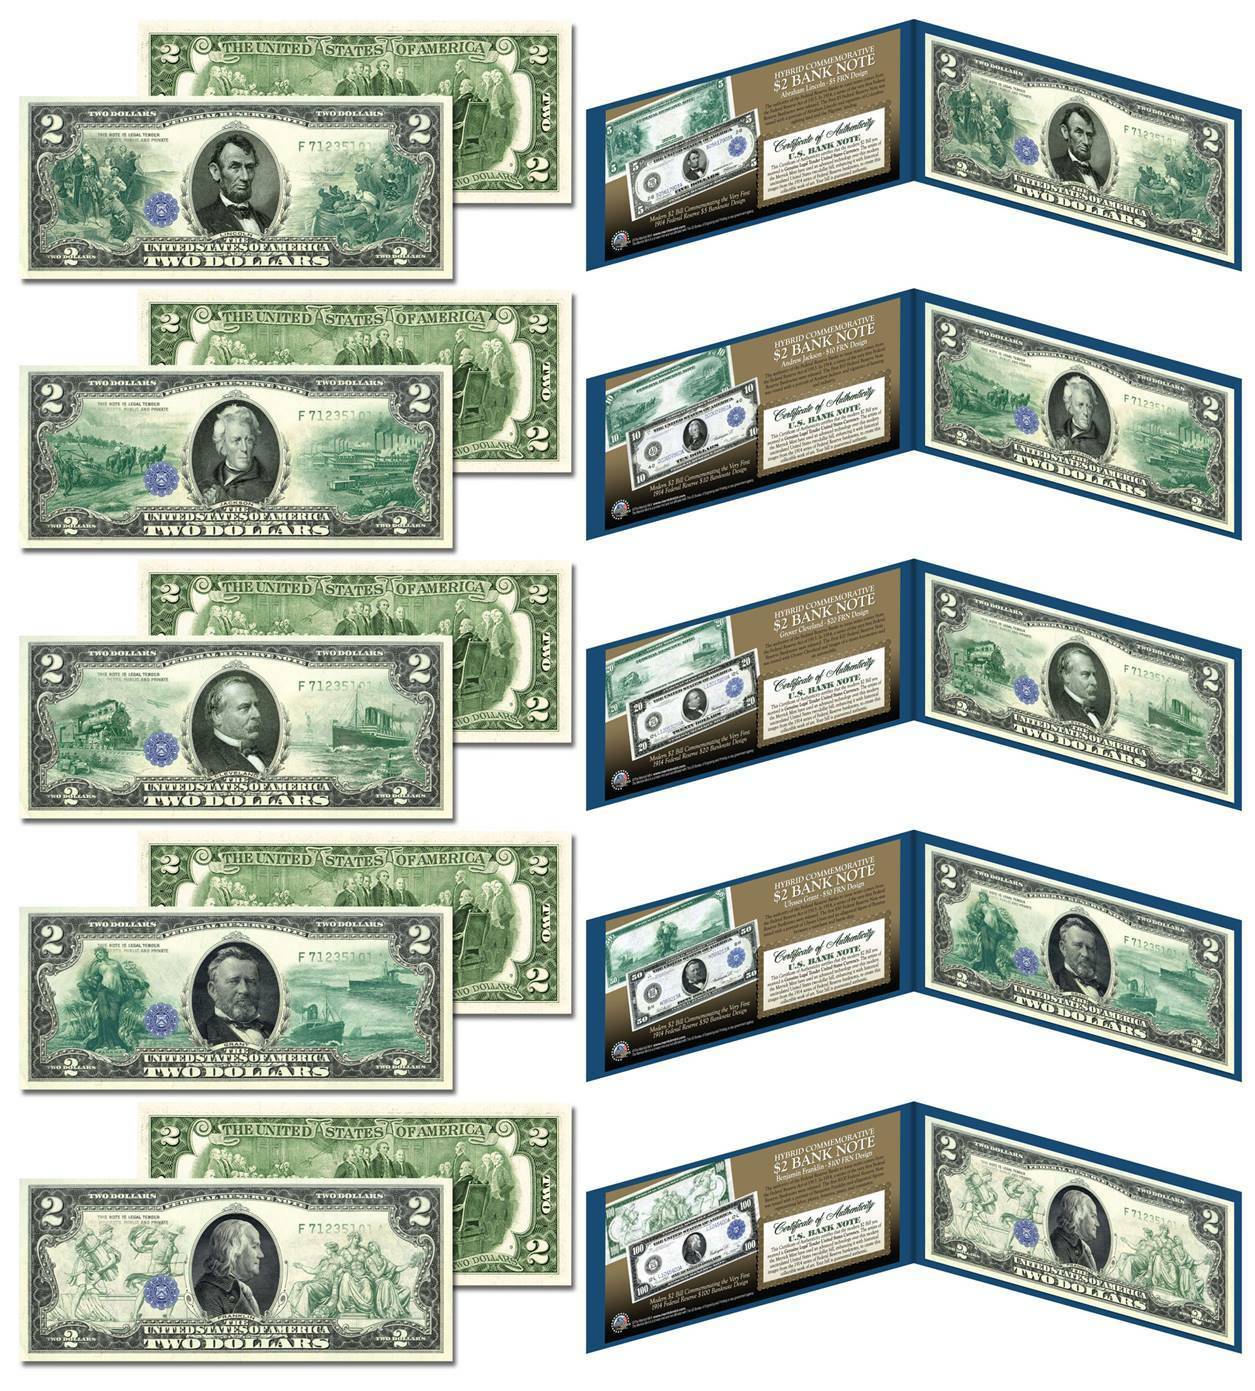 1914 Federal Reserve Bank Notes Hybrid Commemorative - Set Of 5 Modern $2 Bills